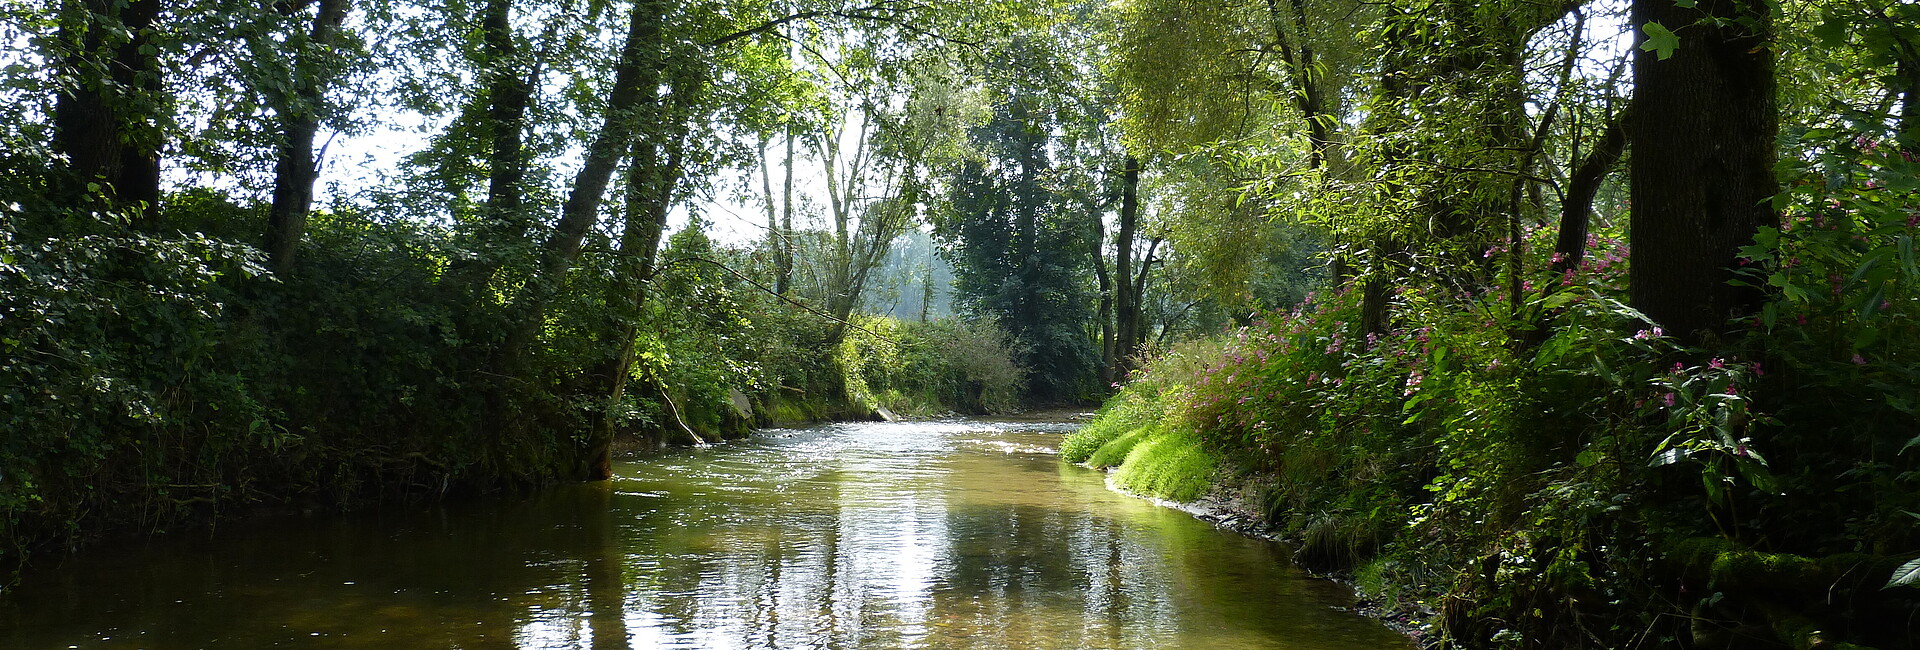 Aitrach fließt durch einen Auwald